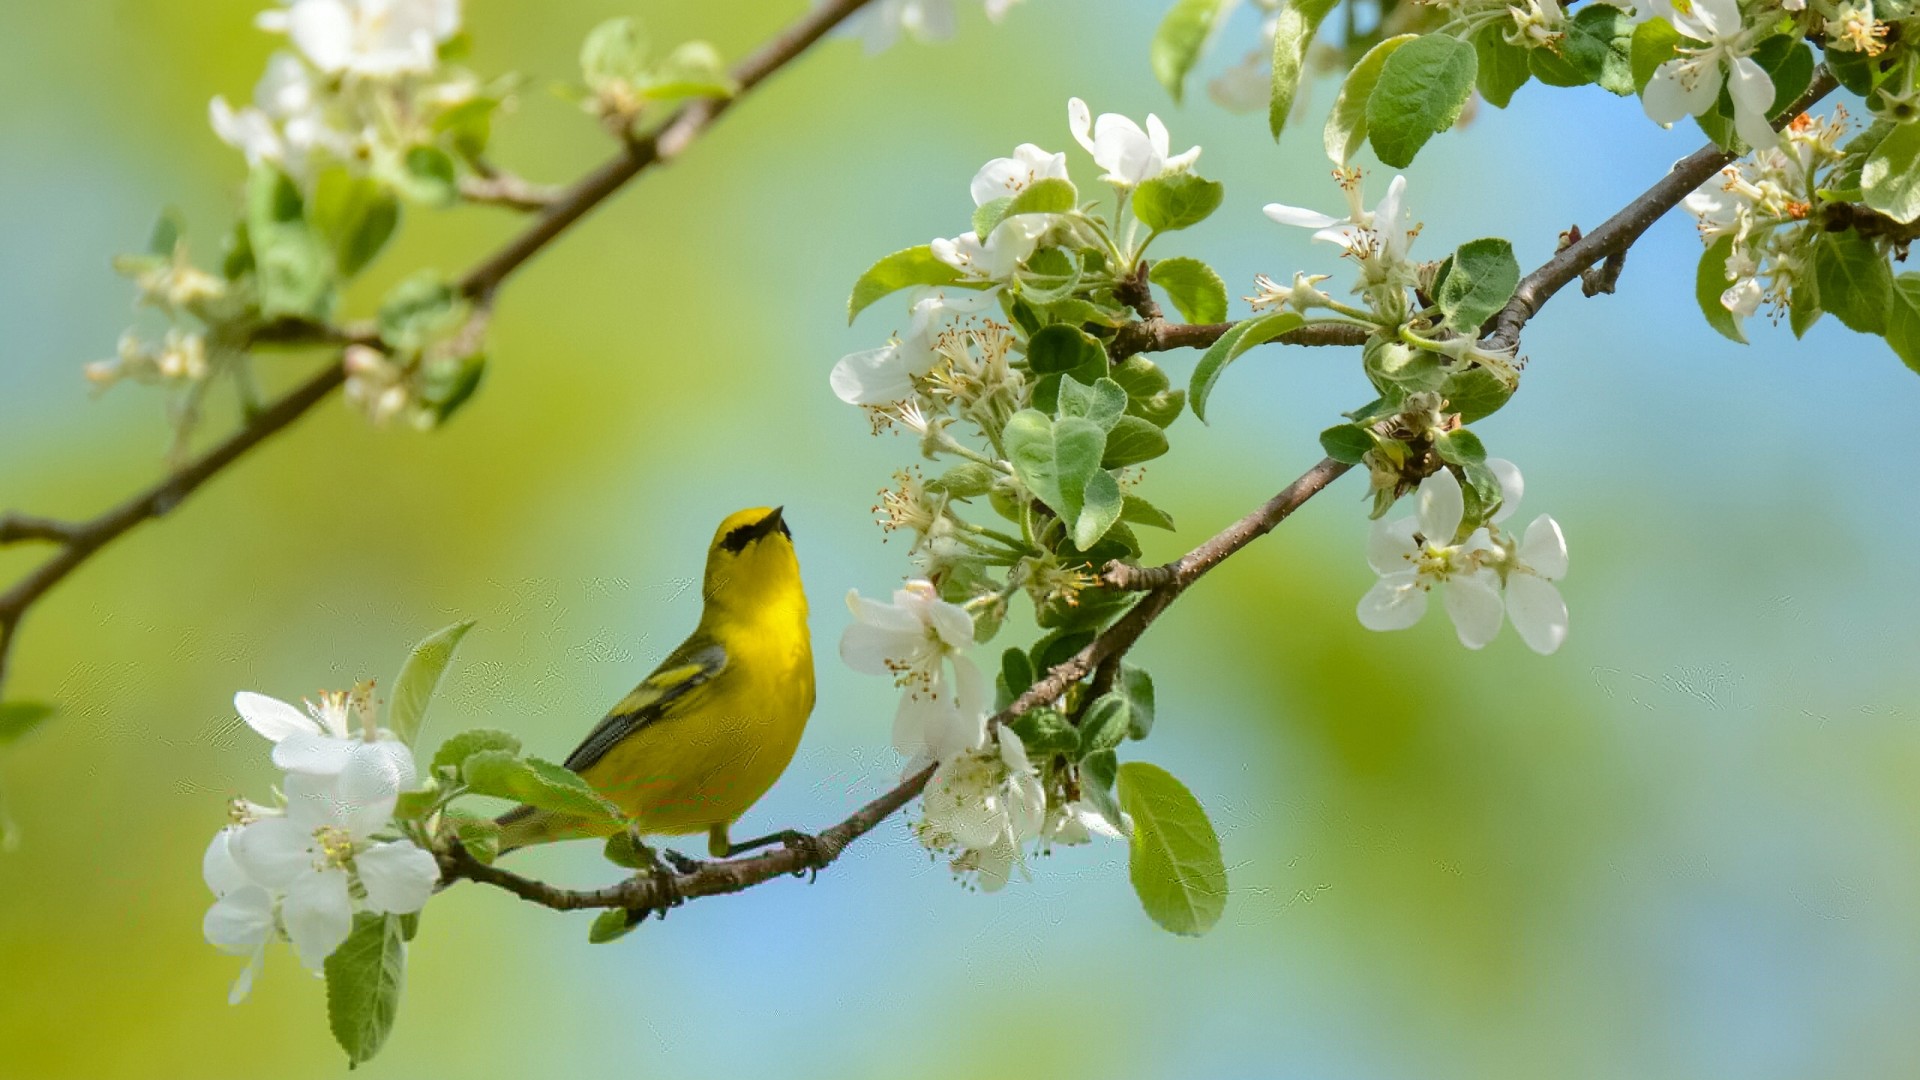 歌手,唱歌,鸟,树枝,梨花,春天风景,动物高清壁纸